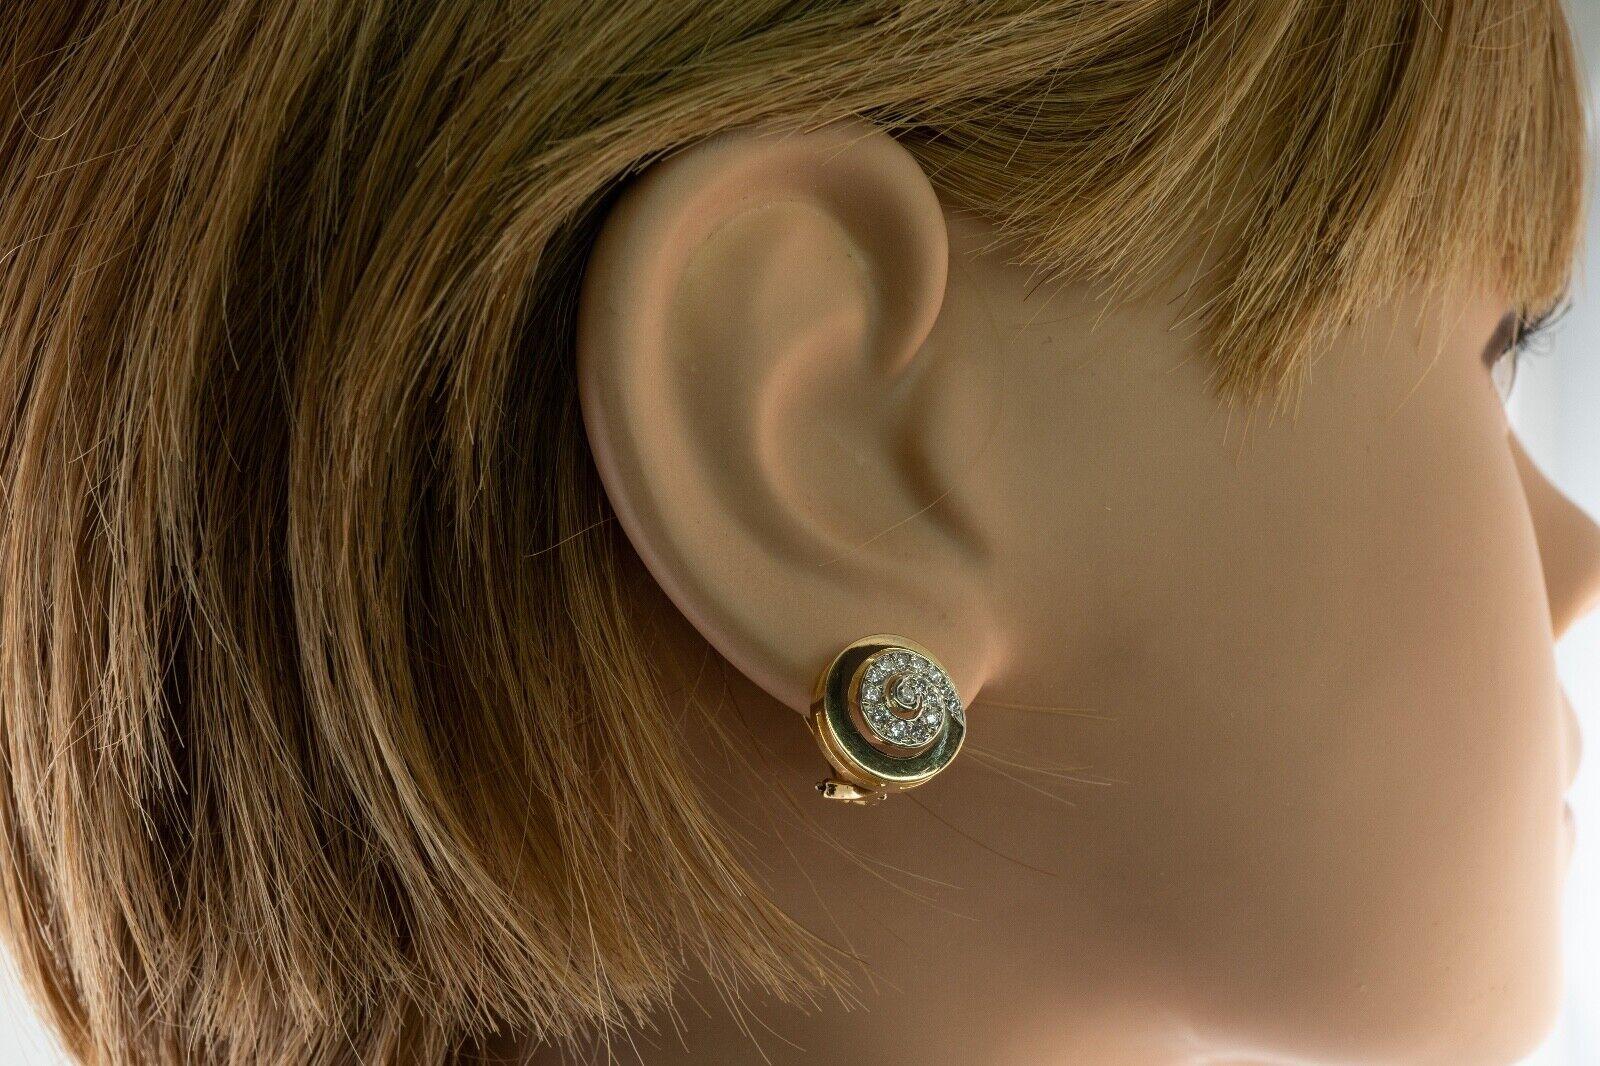 Women's Swirl Spiral Diamond Earrings Ivan & Co. Clips 18k Gold For Sale